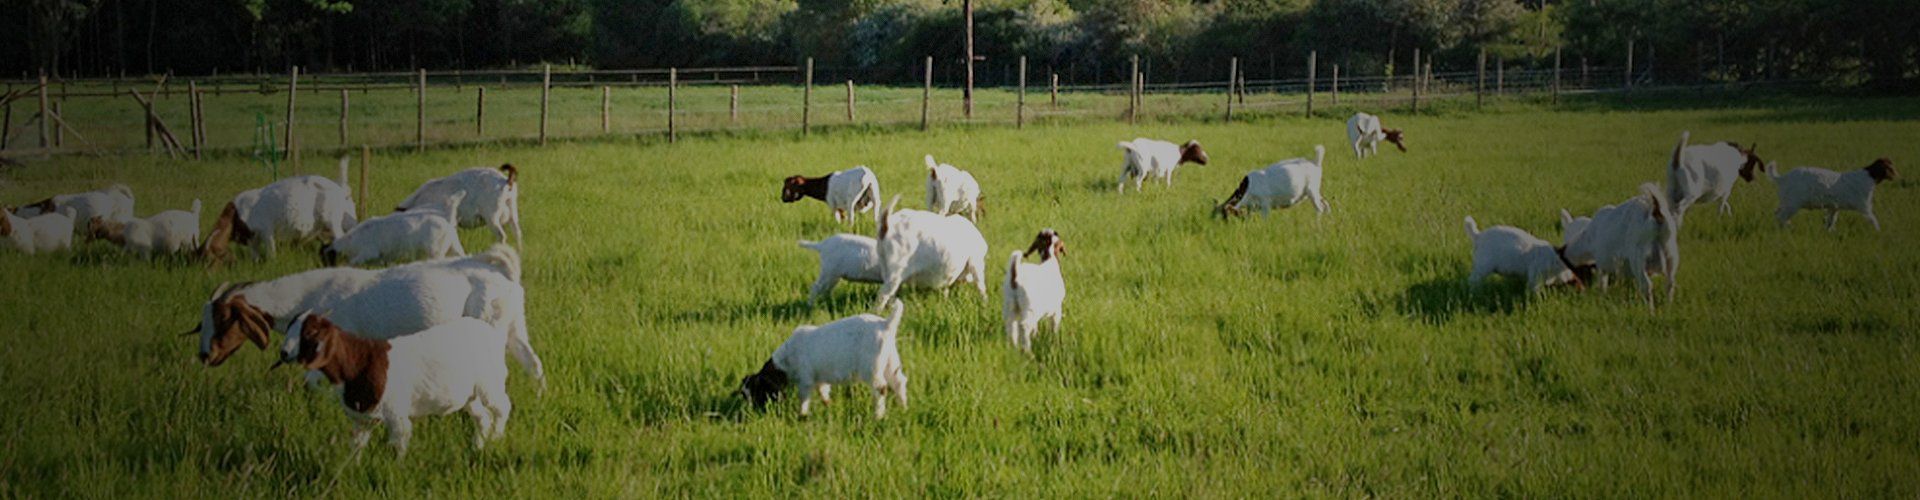 Pedigree Boer goats